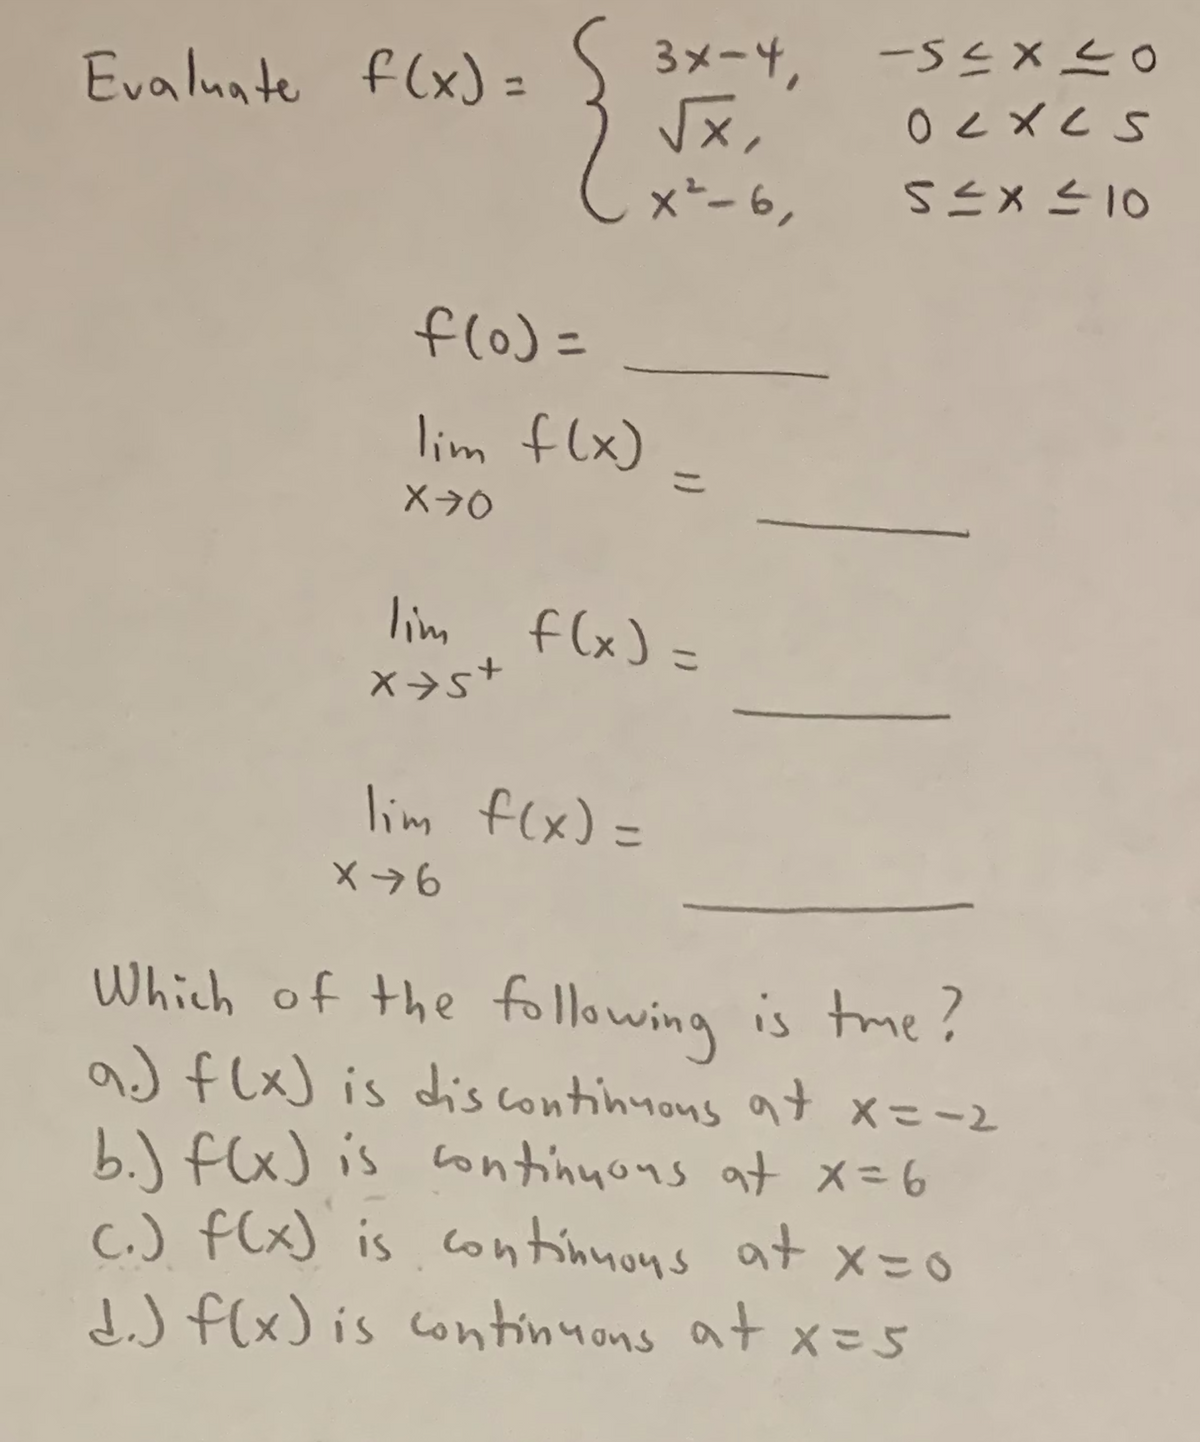 Evaluate f(x) = S 3x-4,
√x,
x² - 6,
f(0) =
lim f(x) =
X70
lim f(x) =
x+s+
lim f(x) =
X76
Which of the following is time?
a) f(x) is dis continuous at x==2
b.) f(x) is continuous at x = 6
c.) f(x) is continuous at x=0
d.) f(x) is continuons at x = 5
-54x20
ocxes
5≤x≤10